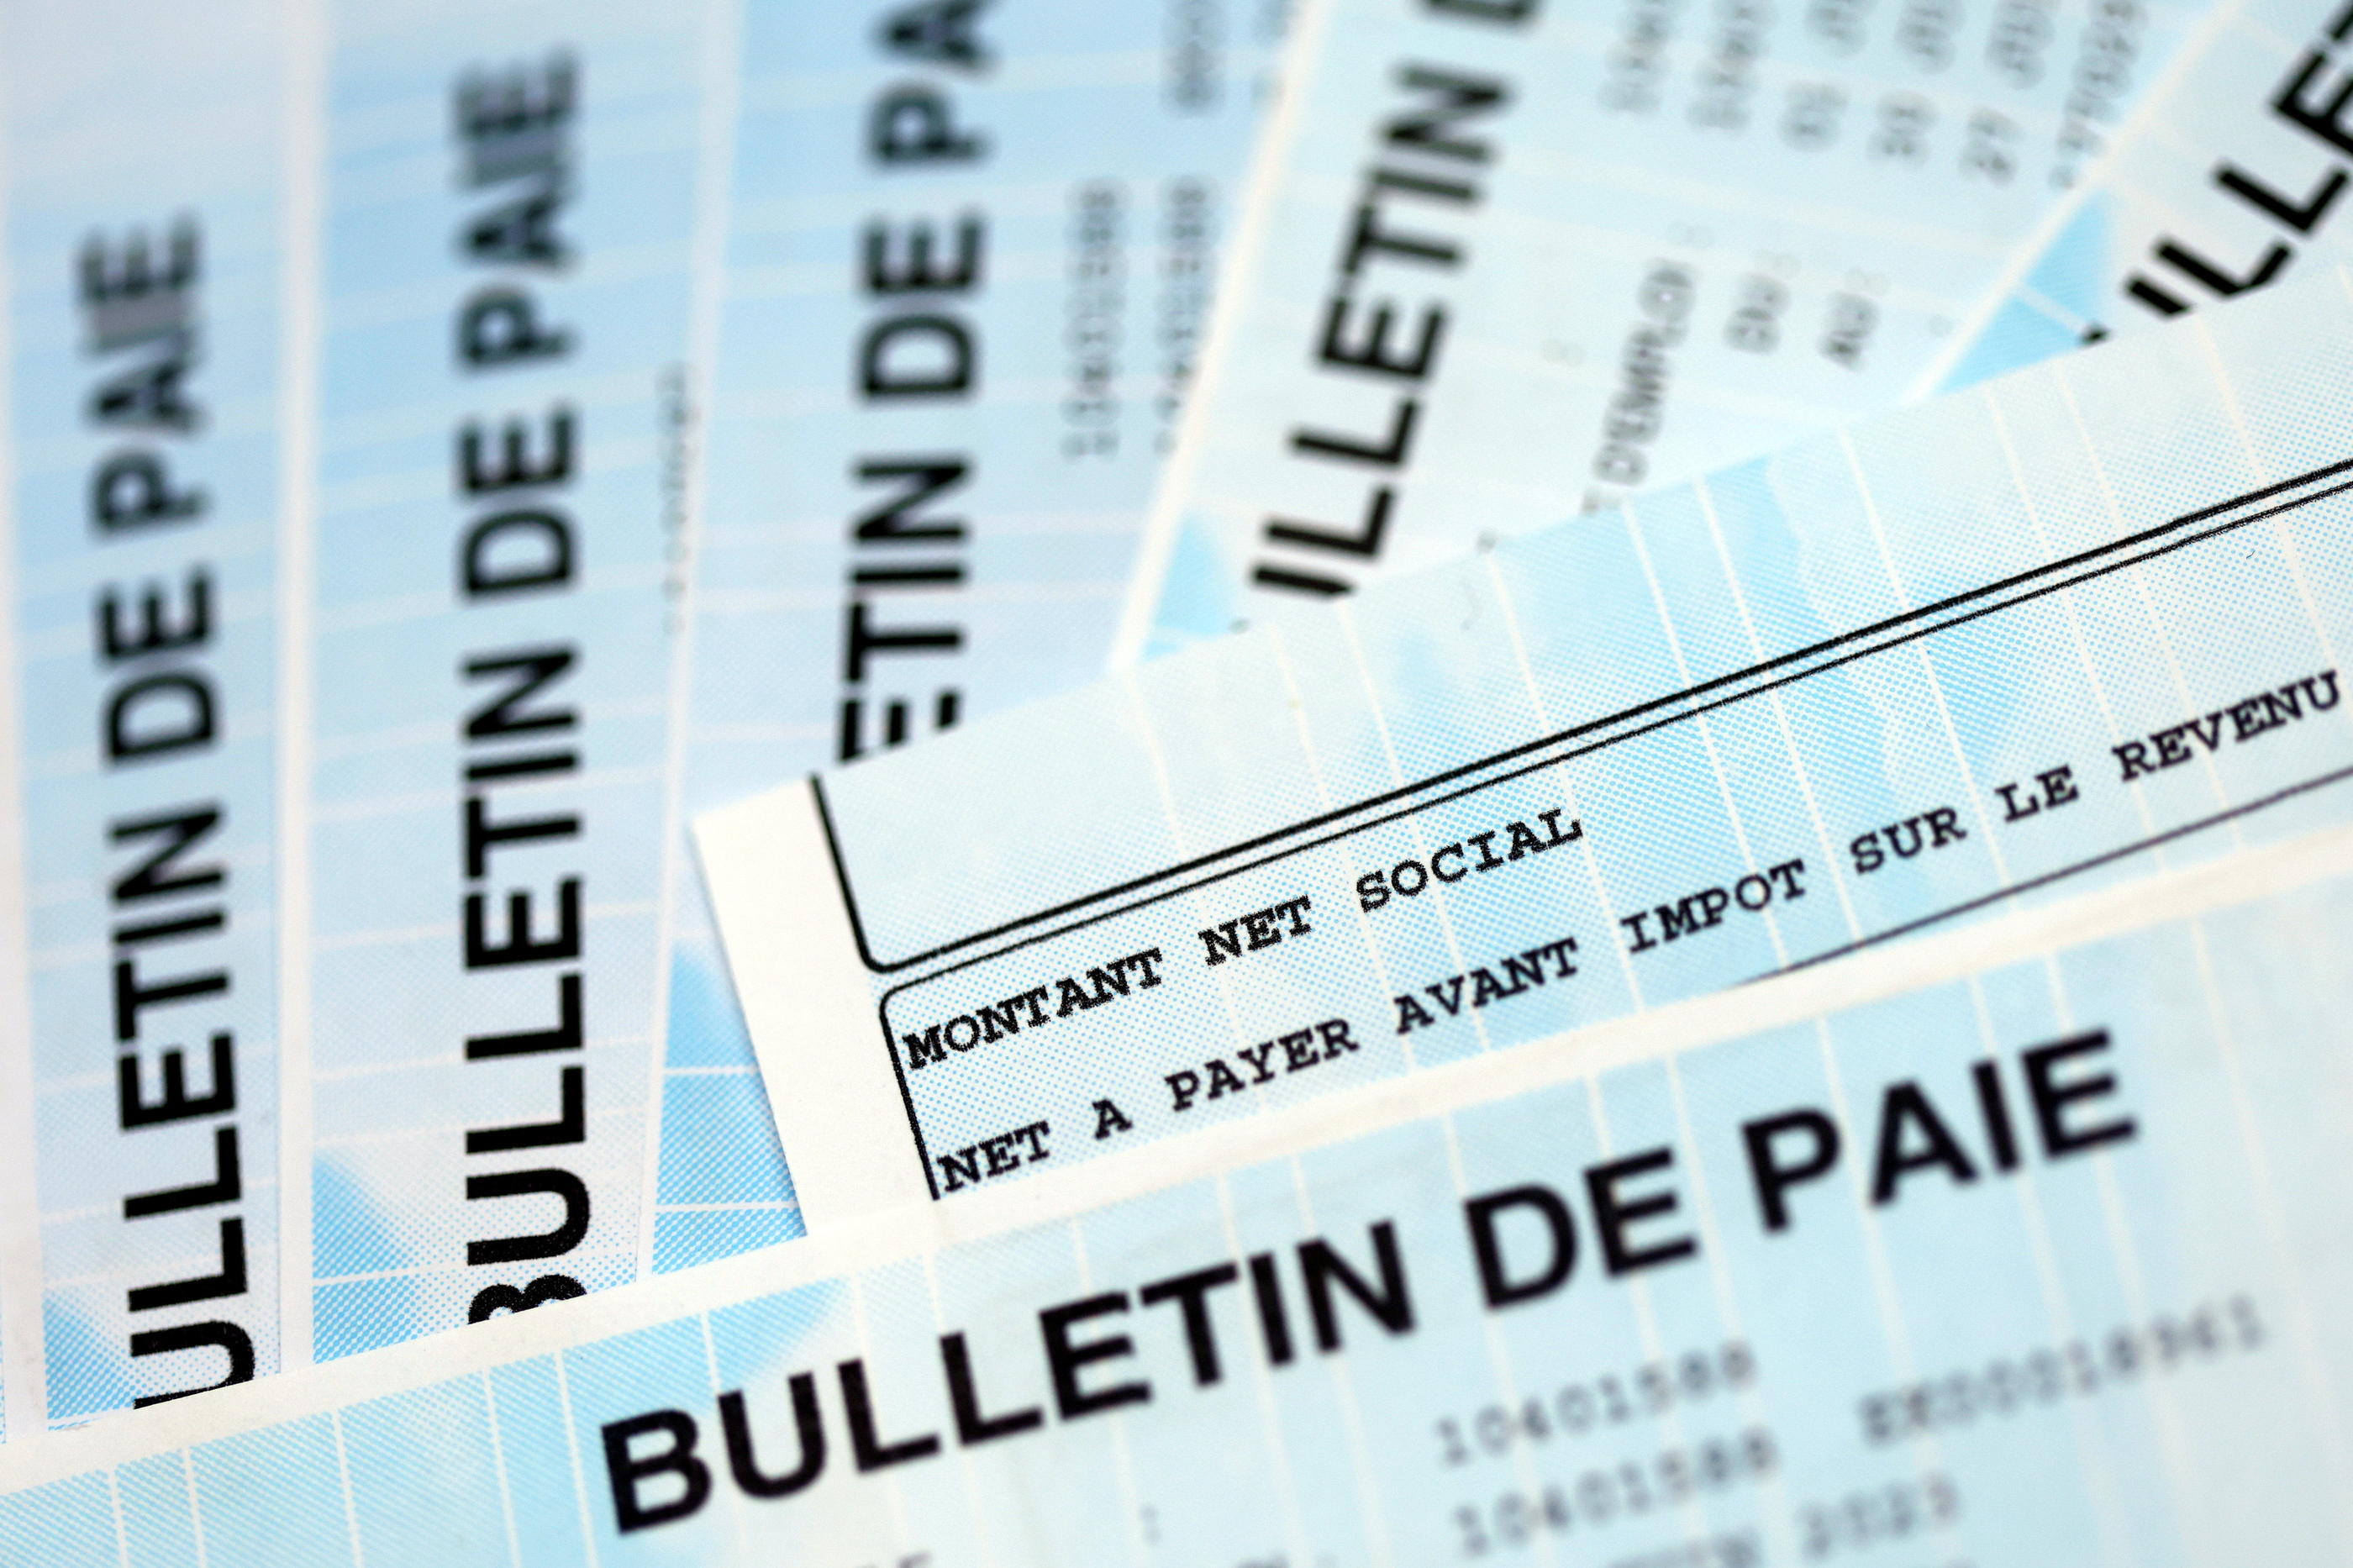 La Banque de France invite les employeurs à anticiper les versements des salaires du mois de mars, car les virements bancaires seront suspendus durant quatre jours à partir de jeudi soir pour le week-end de Pâques. LP /Arnaud Journois.